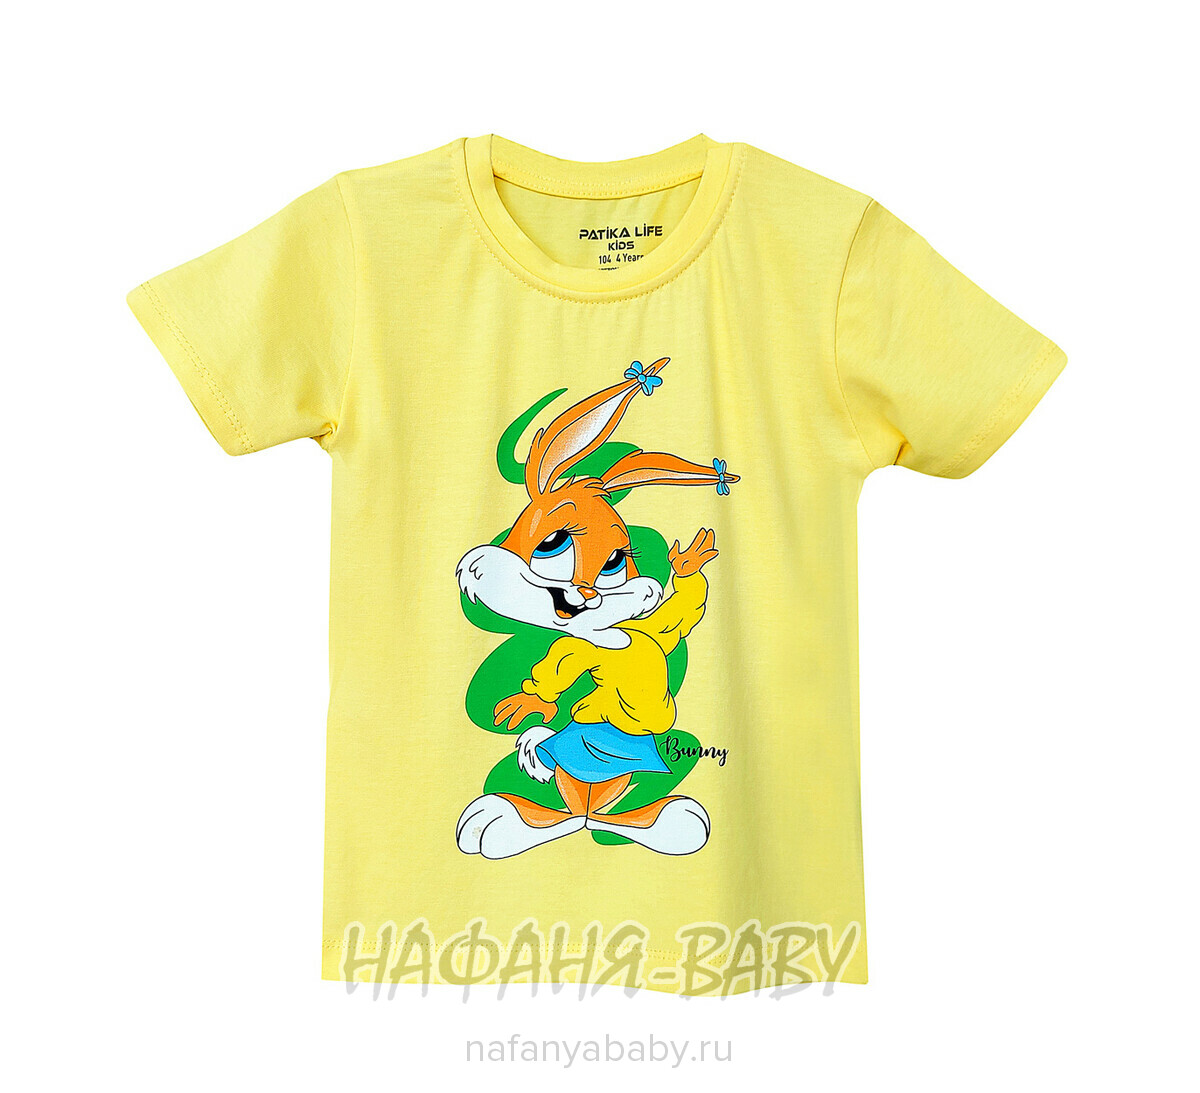 Детская футболка PATIKA арт. 4219 для девочки 1-4 года, цвет желтый, оптом Турция